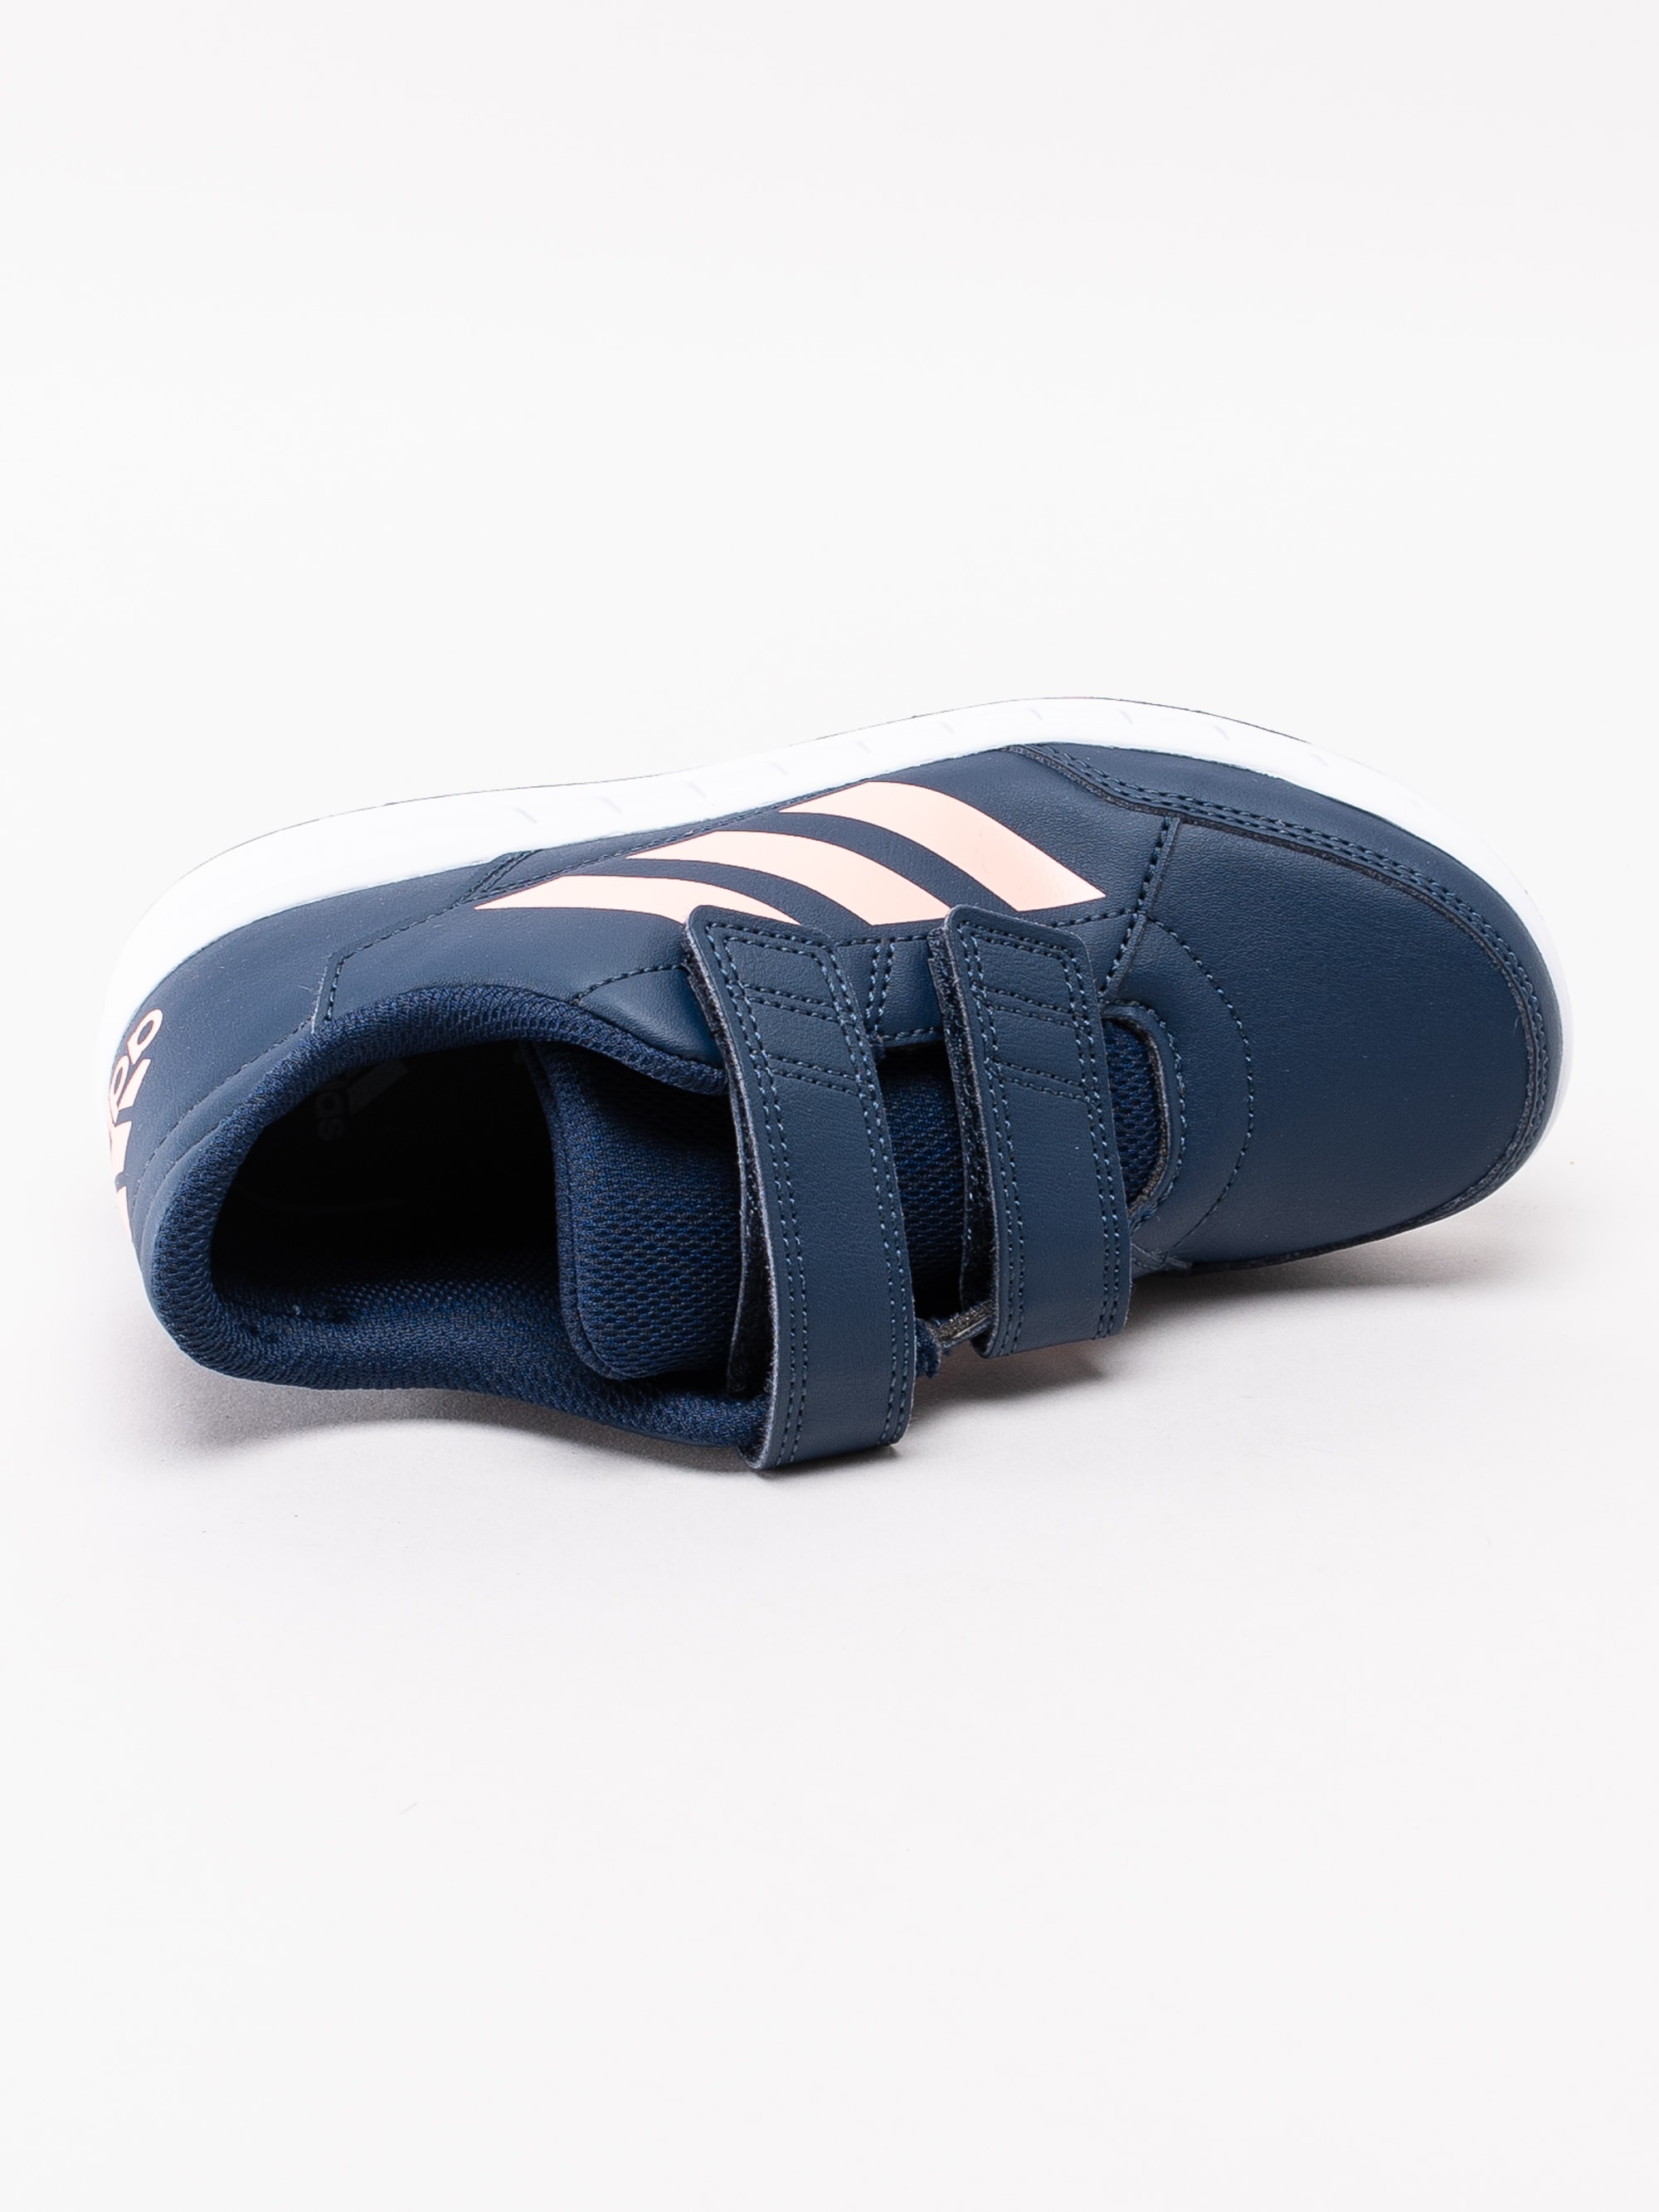 56193016 Adidas Altasport CF K G27089 mörkblå sneakers med kardborre-4